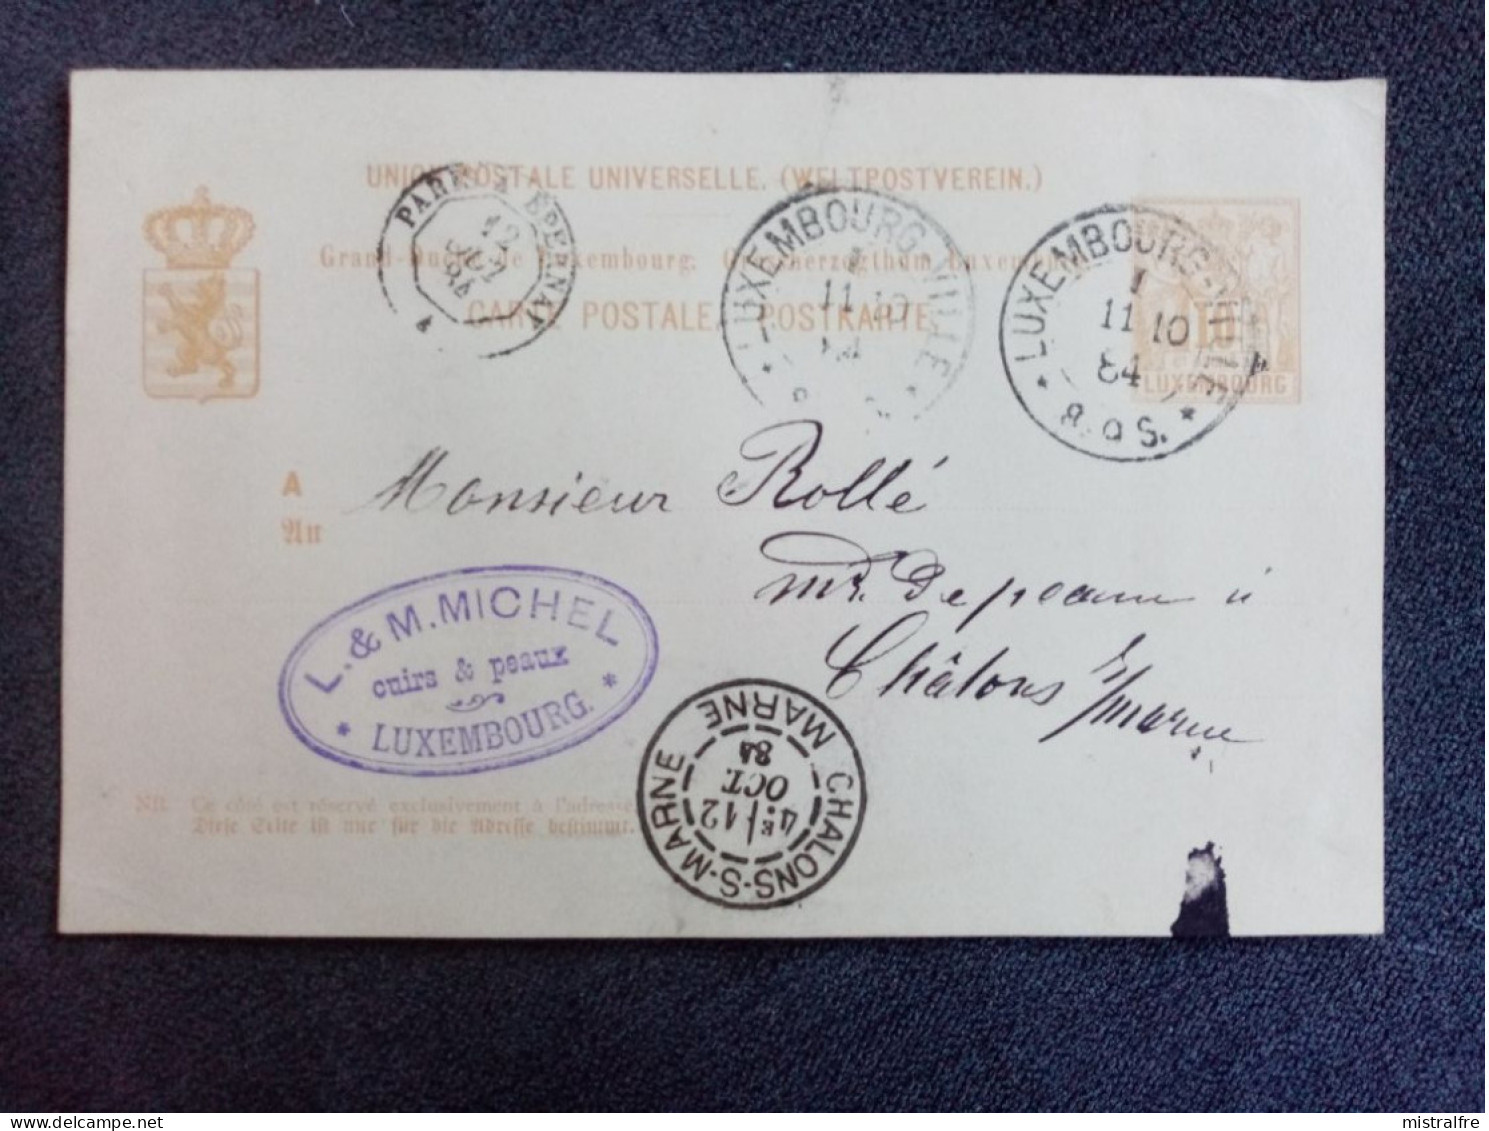 LUXEMBOURG. 1884. Carte Postale De Luxembourg à Chalon Sur Marne Via Paris. Exp L.M MICHEL " Cuirs Et Peaux " - Enteros Postales